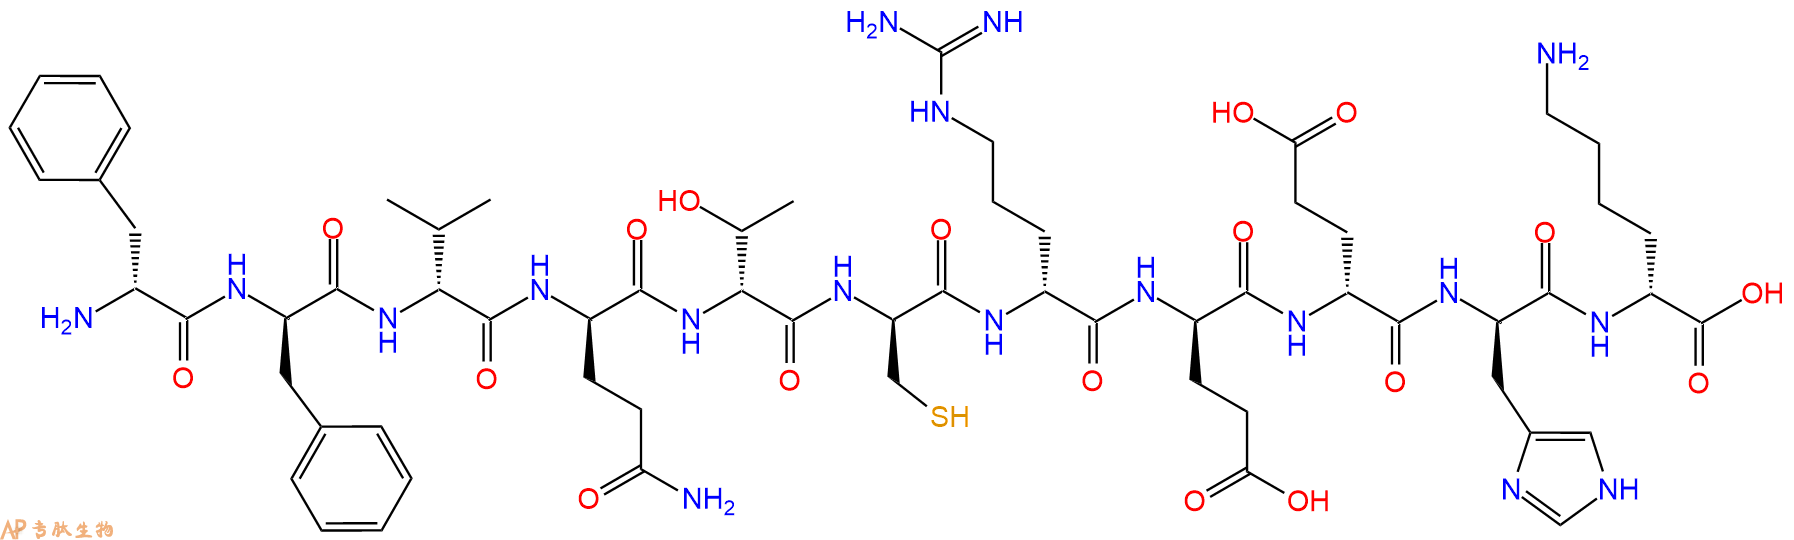 专肽生物产品H2N-DPhe-DPhe-DVal-DGln-DThr-DCys-DArg-DGlu-DGlu-D